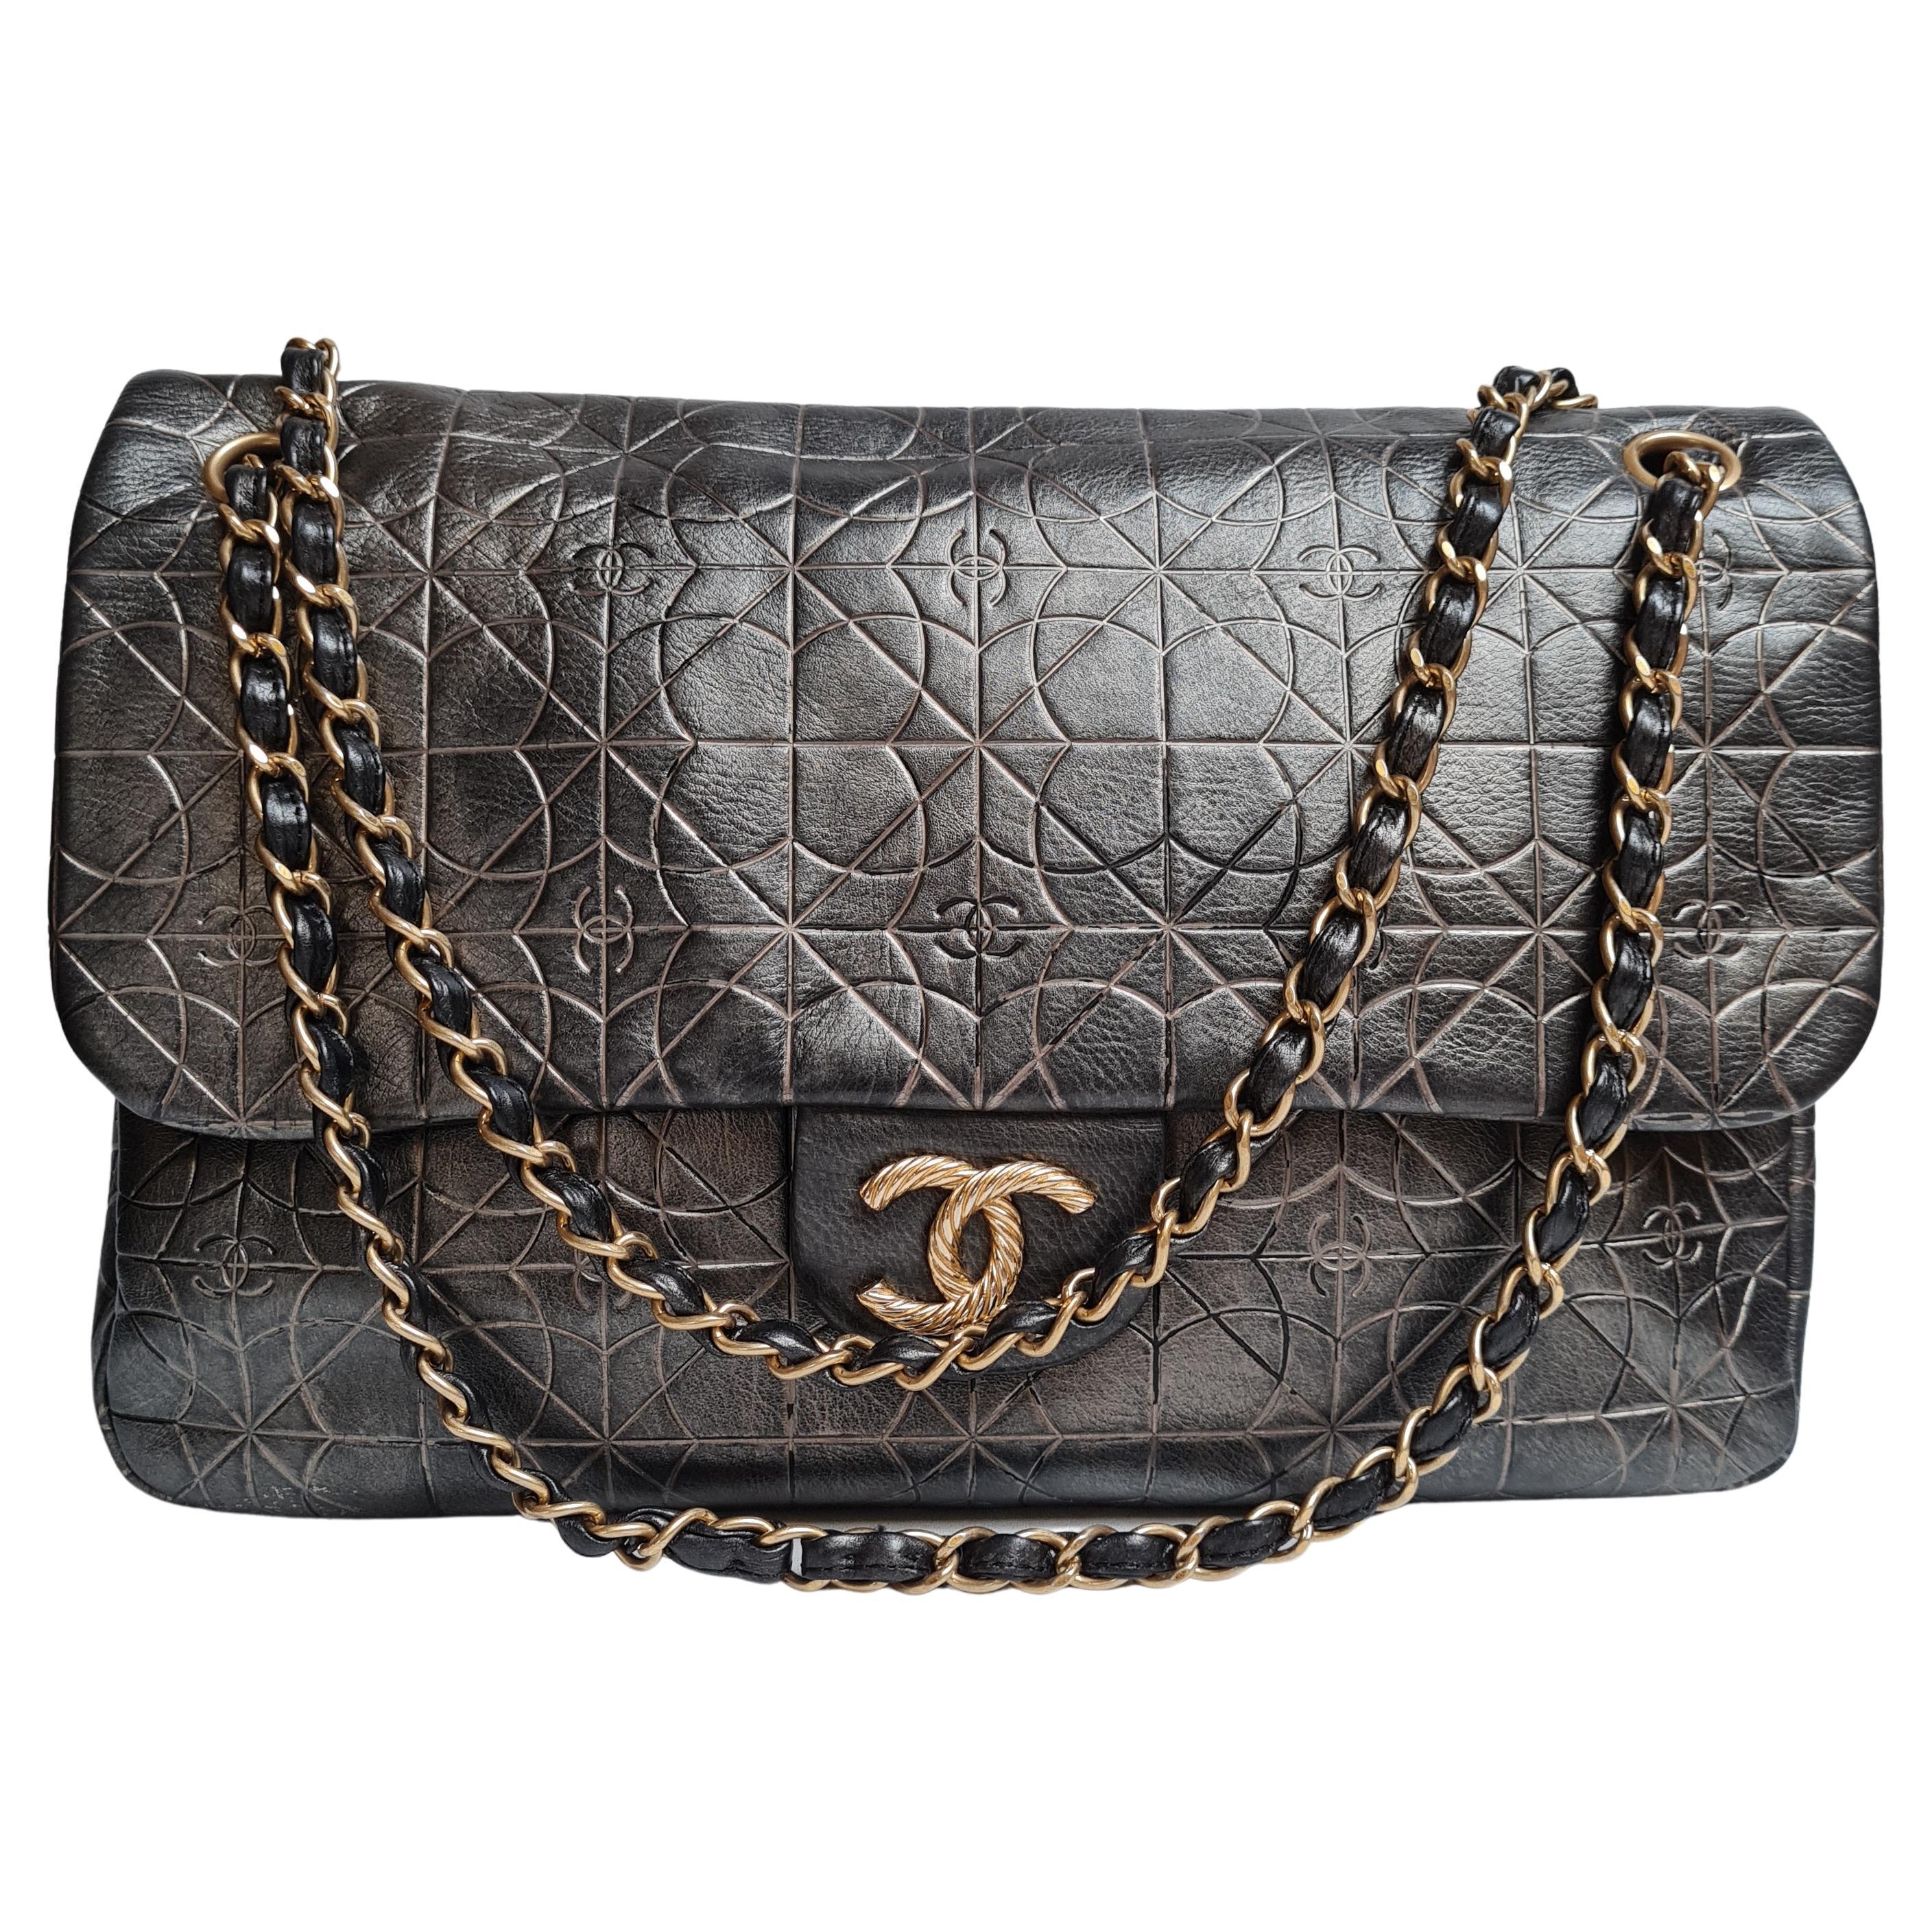 Chanel Embossed Jumbo Flap Bag